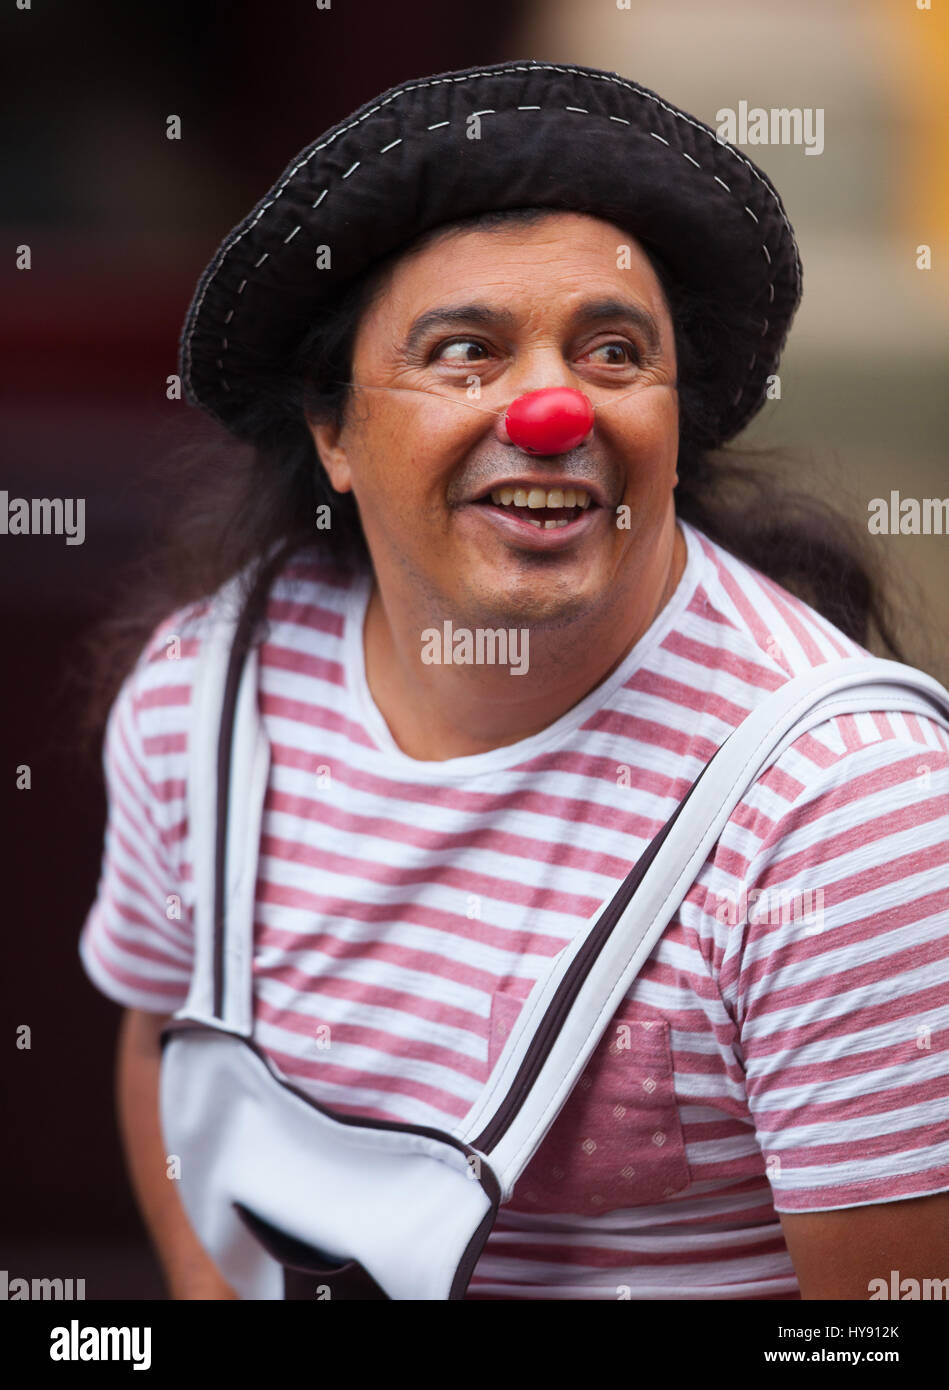 Un nez rouge - acteur interprète hors du côté de Teatro Juarez dans Guanajuato. México. Banque D'Images